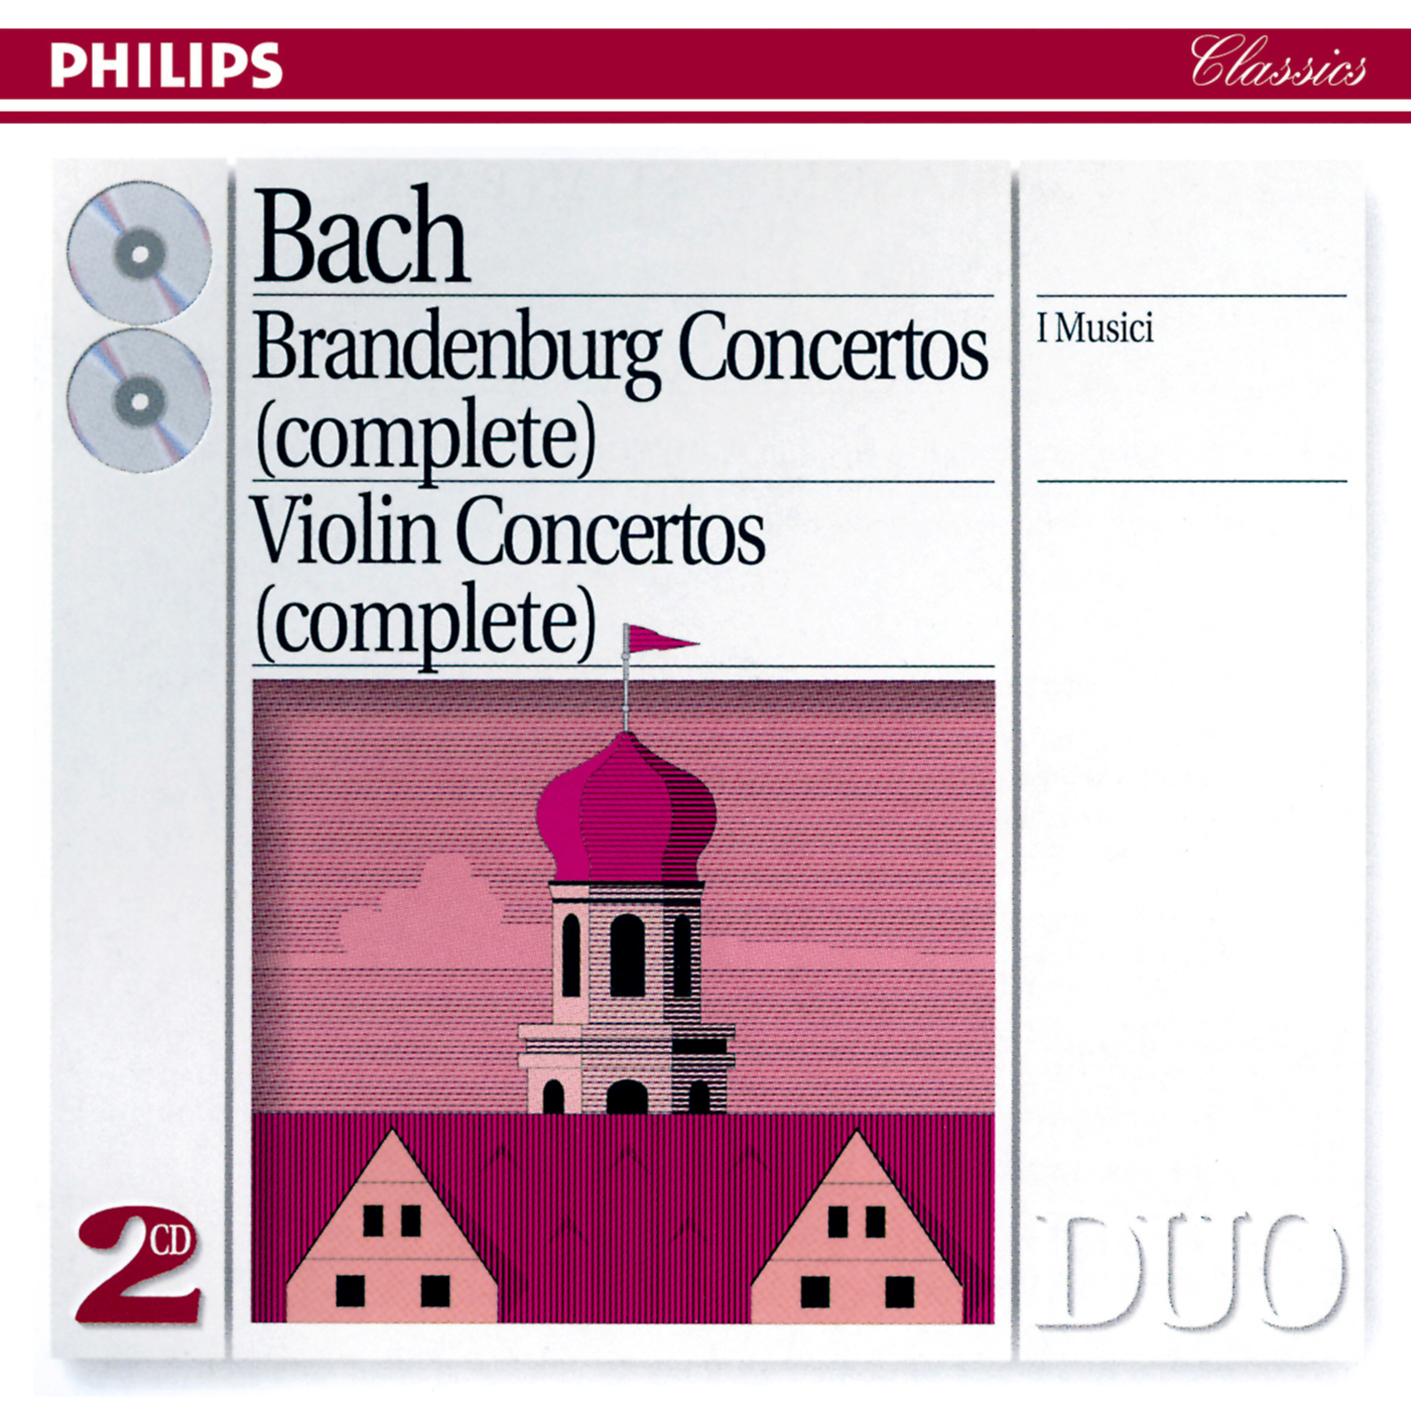 I Musici - Brandenburg Concerto No.6 in B flat, BWV 1051:2. Adagio ma non tanto